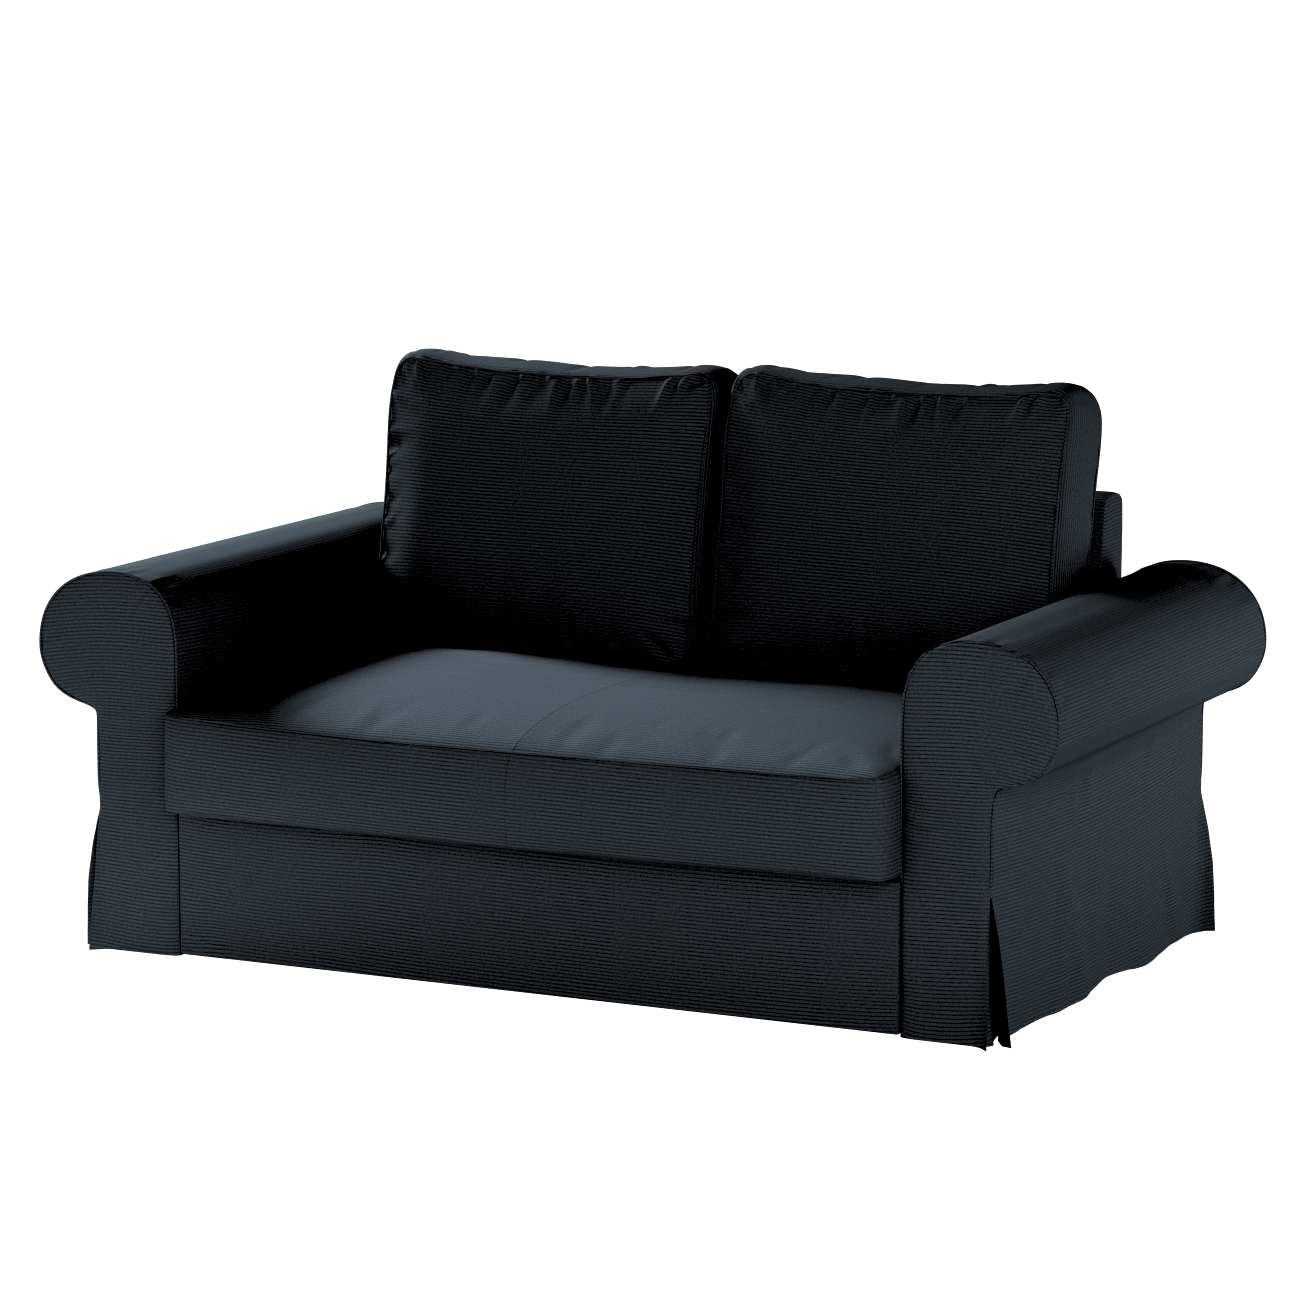 Bezug für Backabro 2-Sitzer Sofa ausklappbar, anthrazit, Bezug für Backabro günstig online kaufen